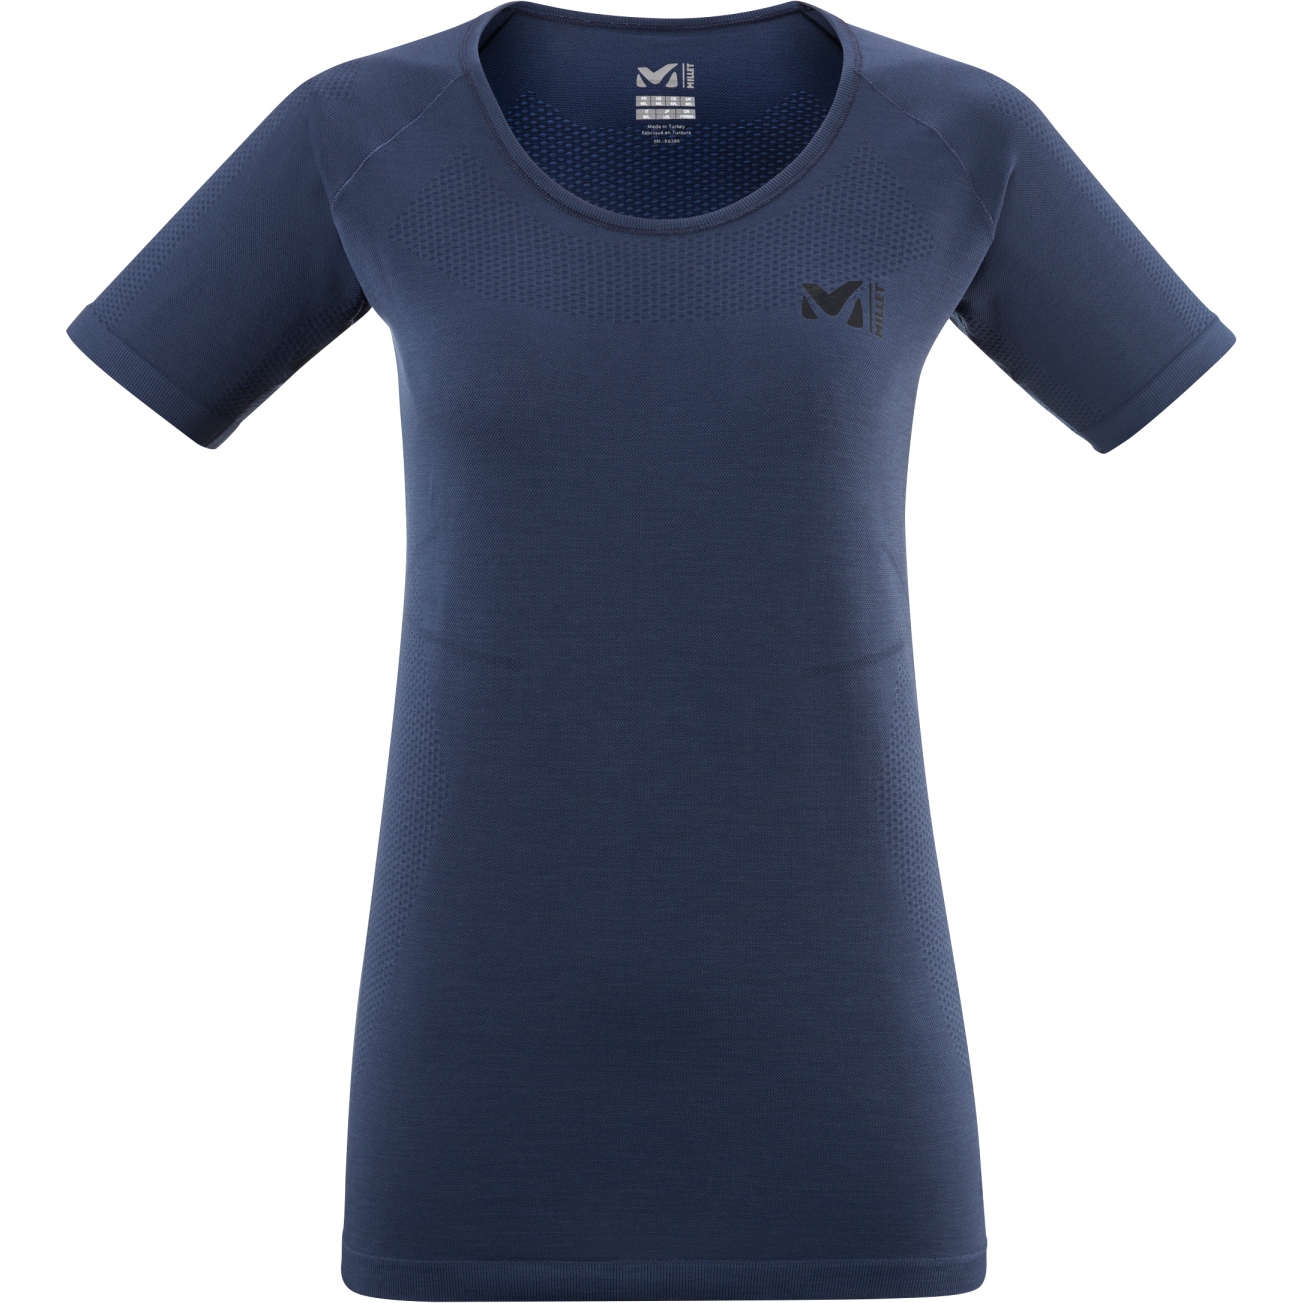 Produktbild von Millet Intense Seamless Light T-Shirt Damen MIV9761 - Saphir